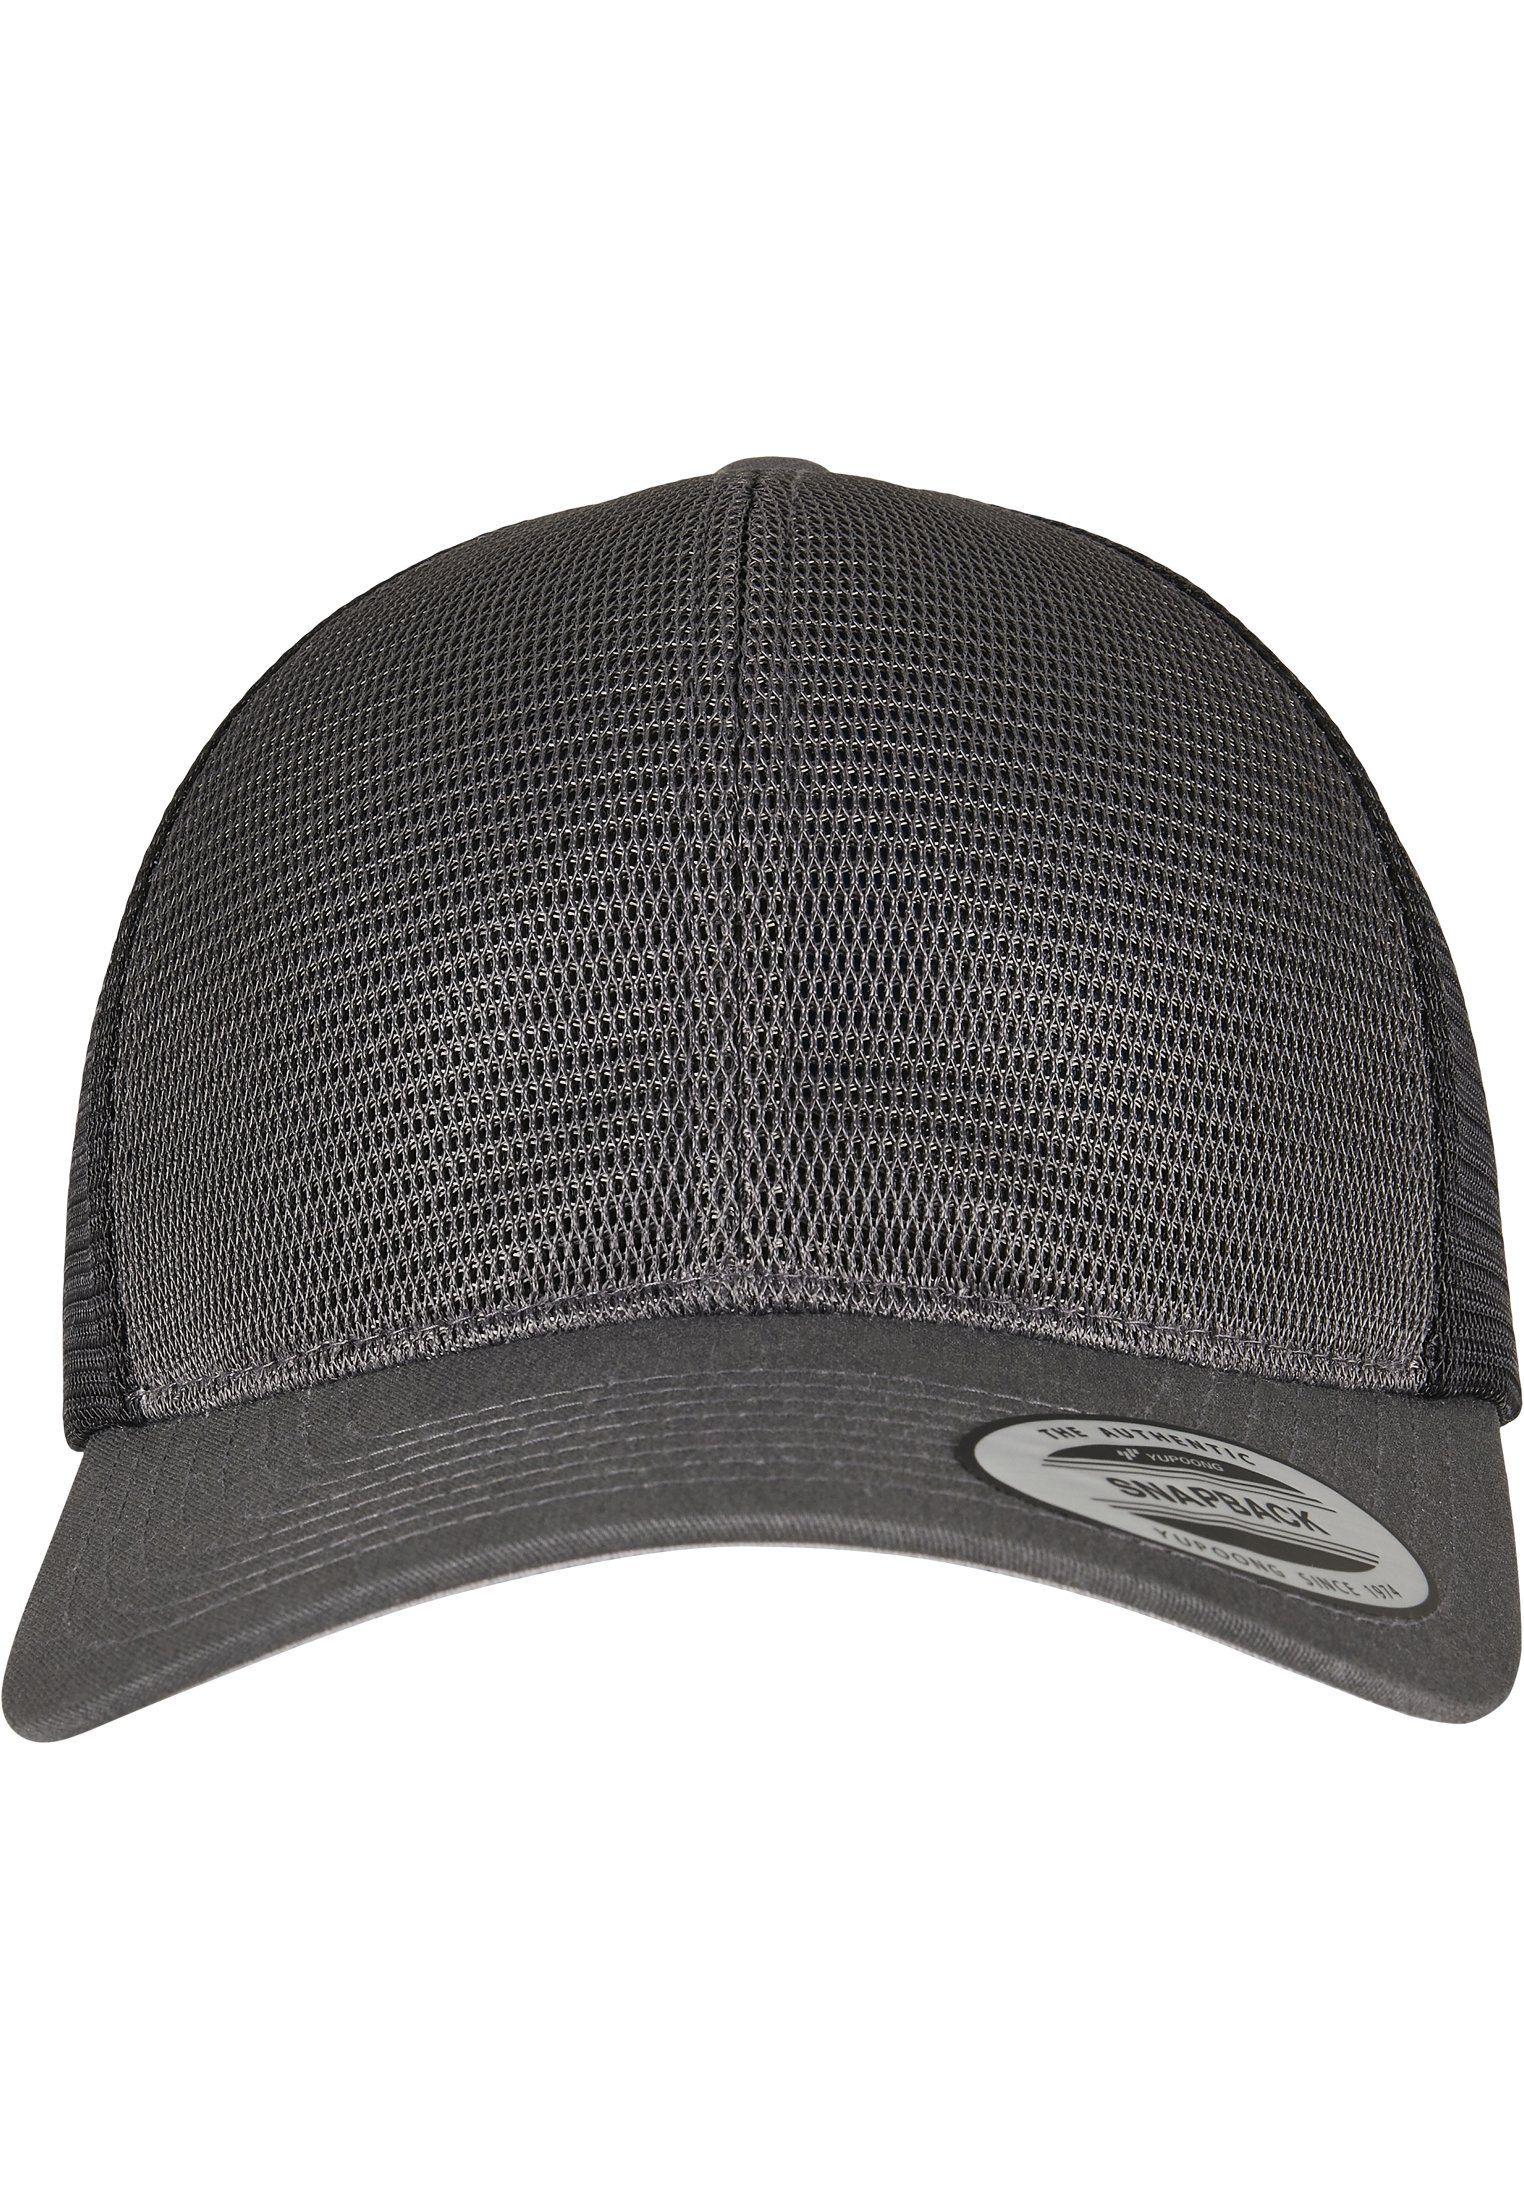 Flexfit Flex Cap Cap Accessoires 2-Tone 360° Omnimesh charcoal/black